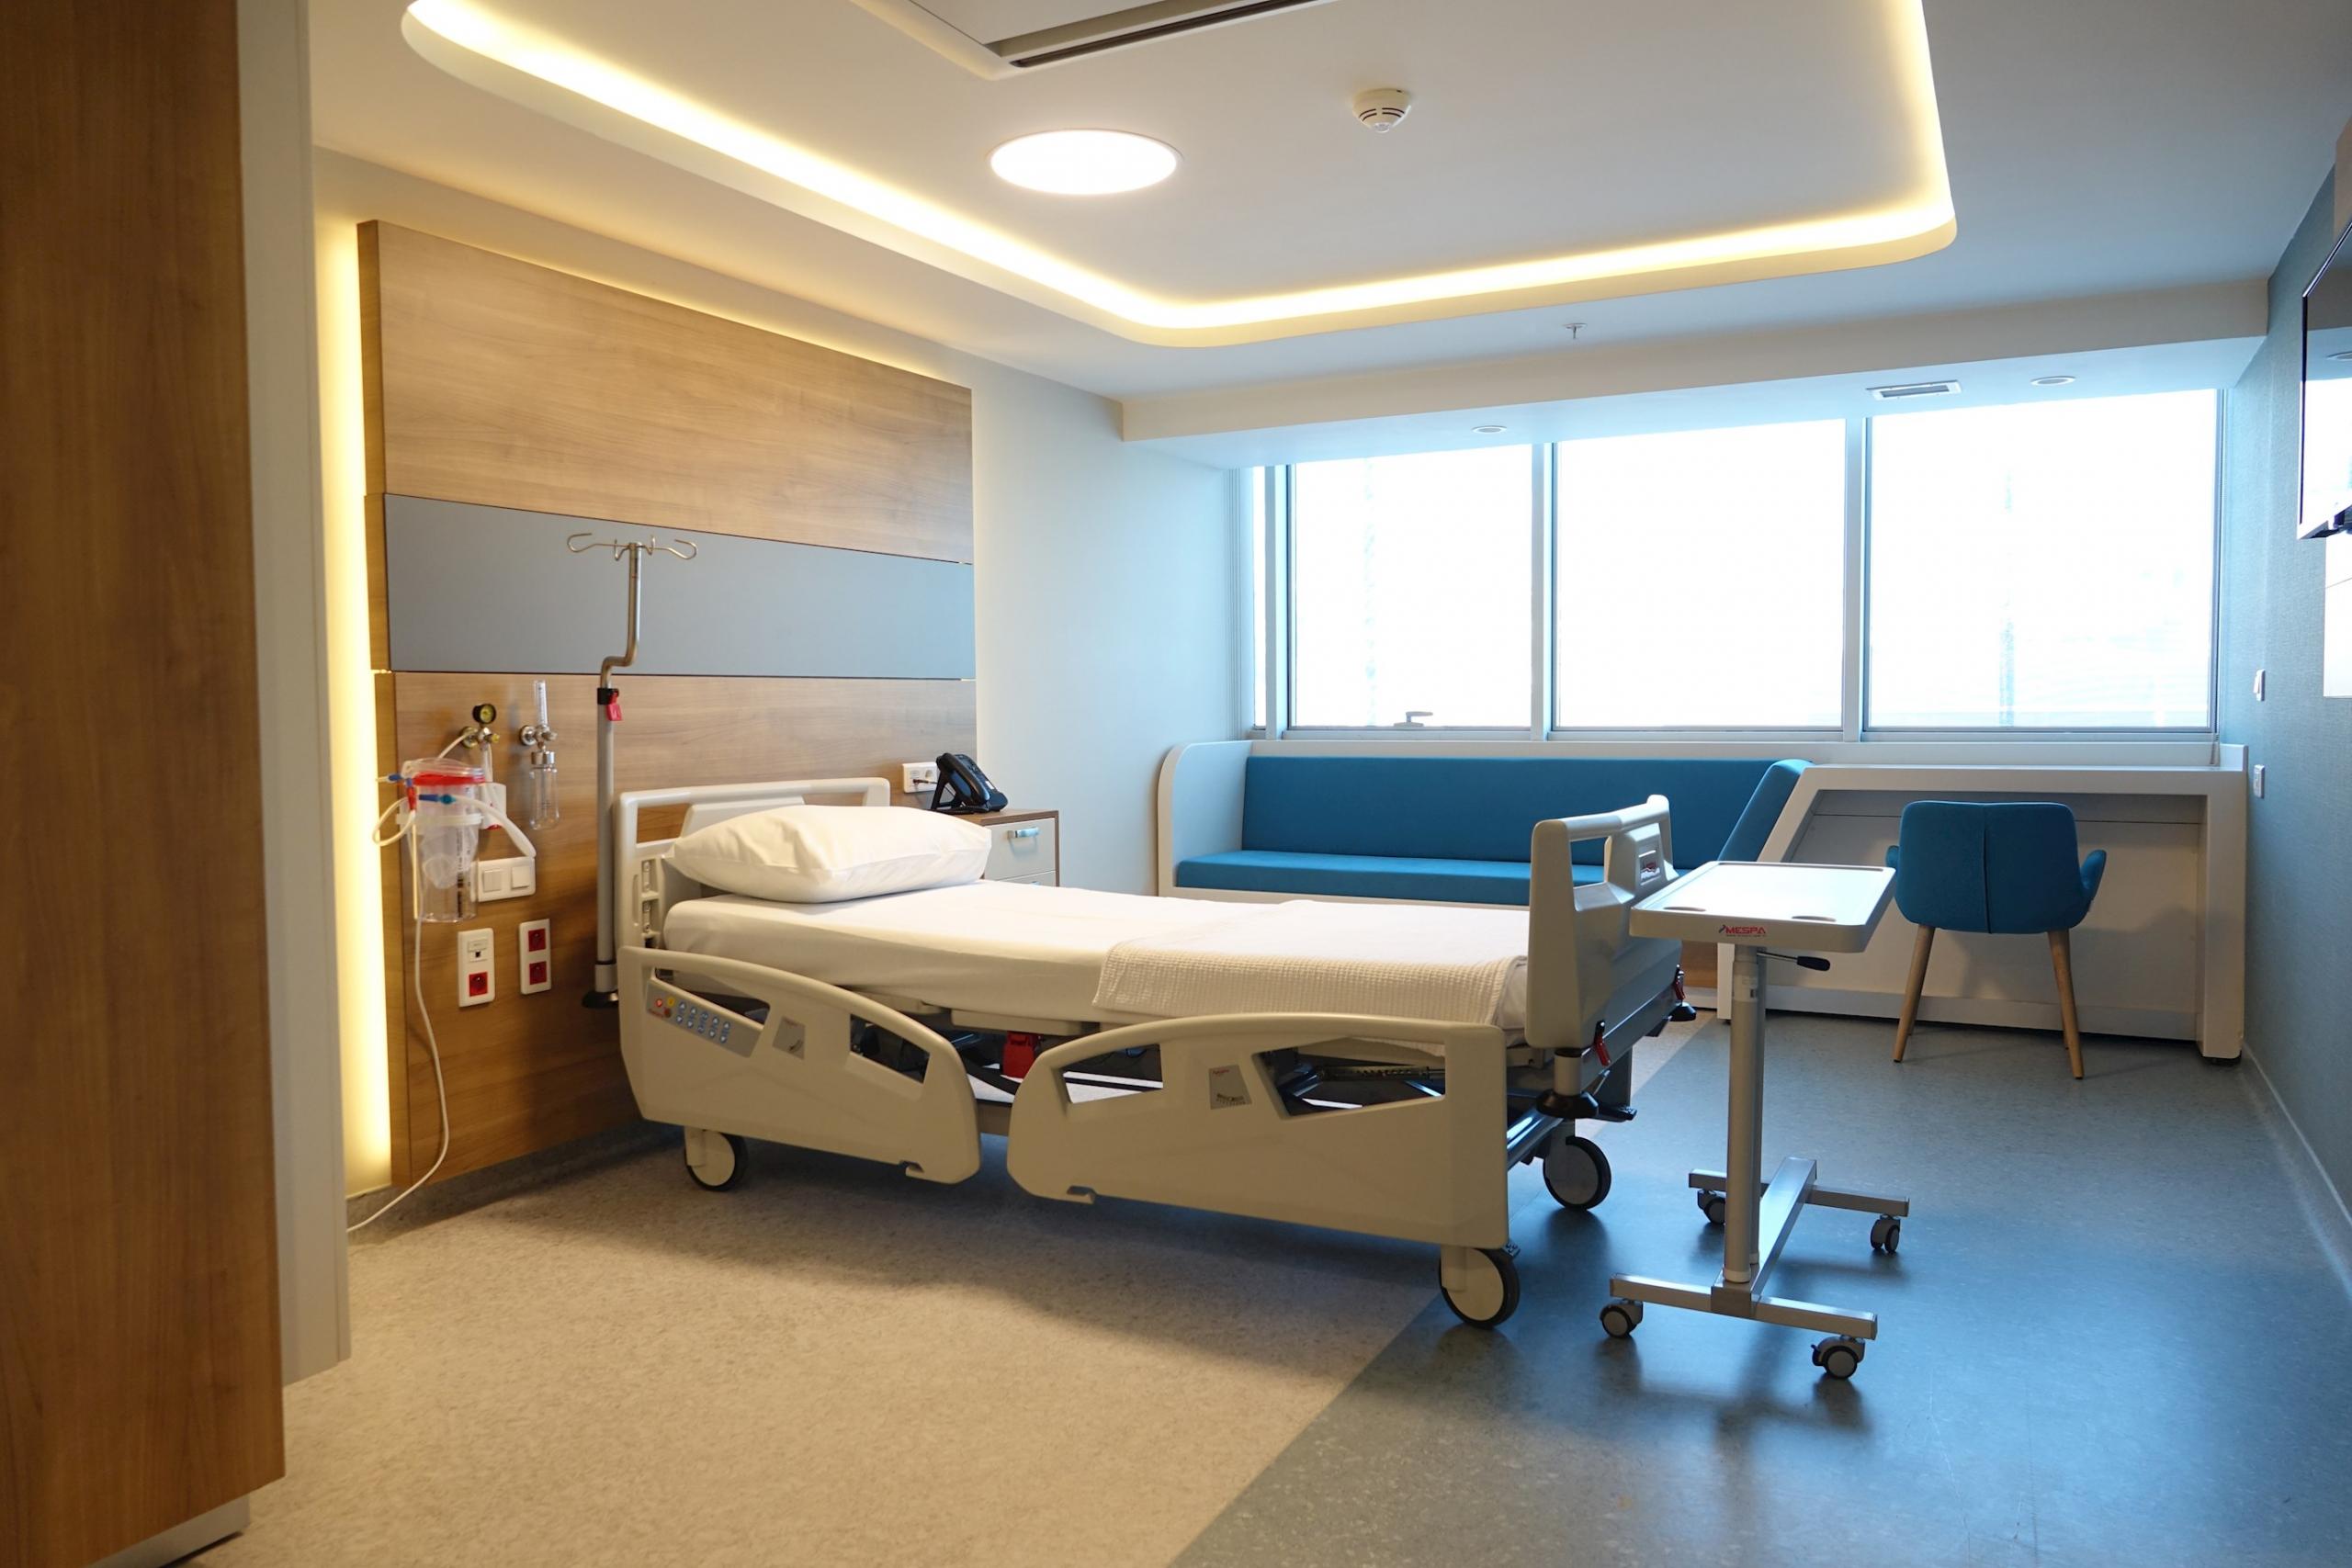 Adana özel hastaneler